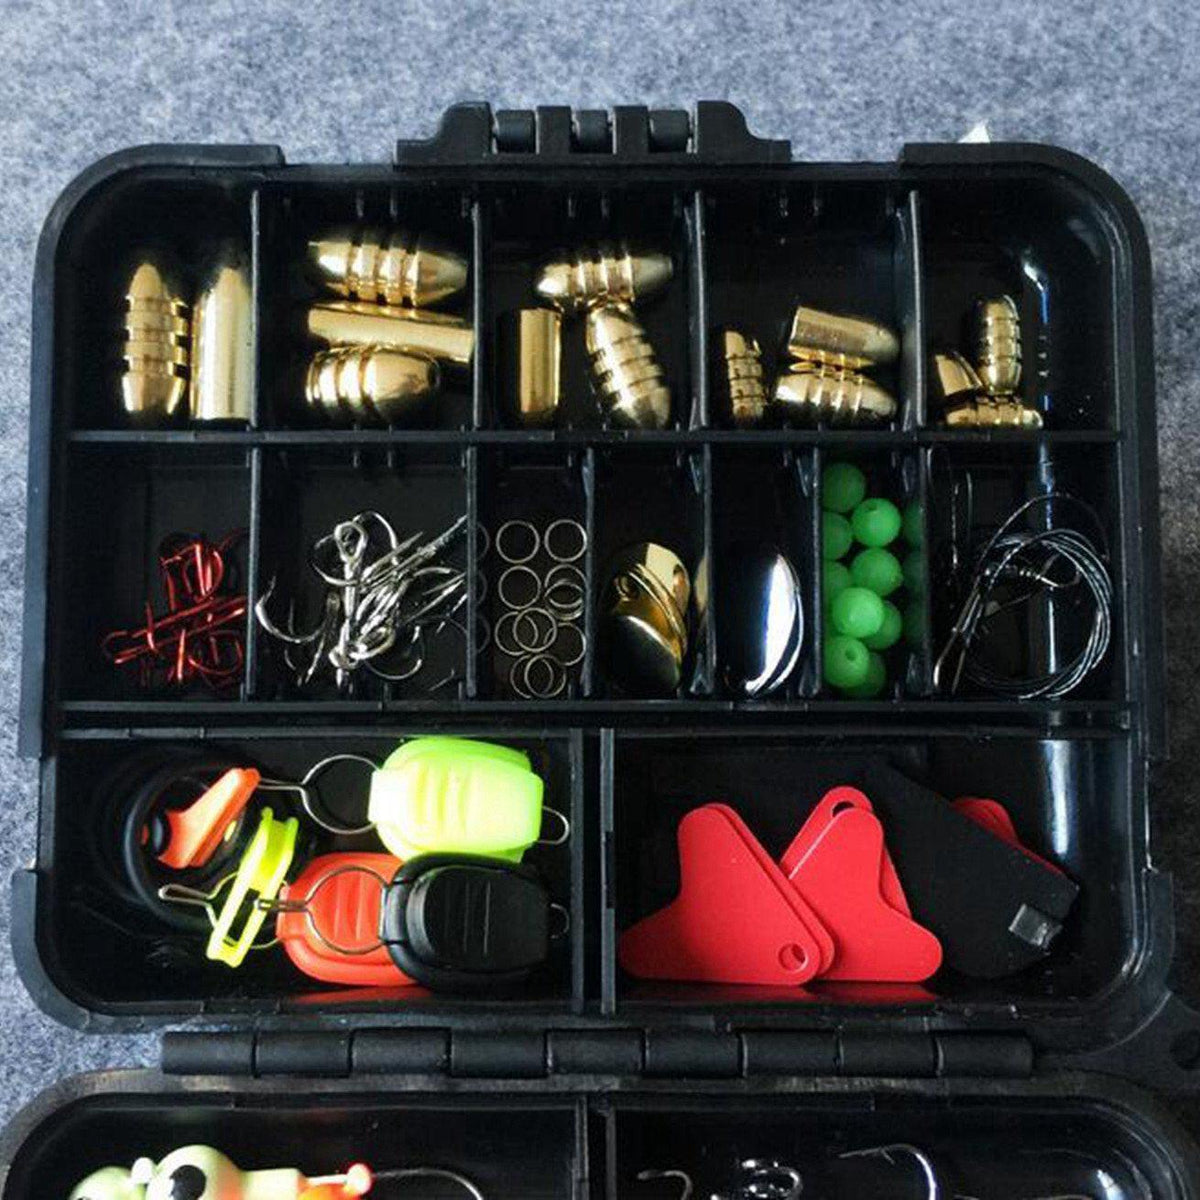 Elegantoss Portable Fun Fishing Lures Baits Kit Set in Tackle Box